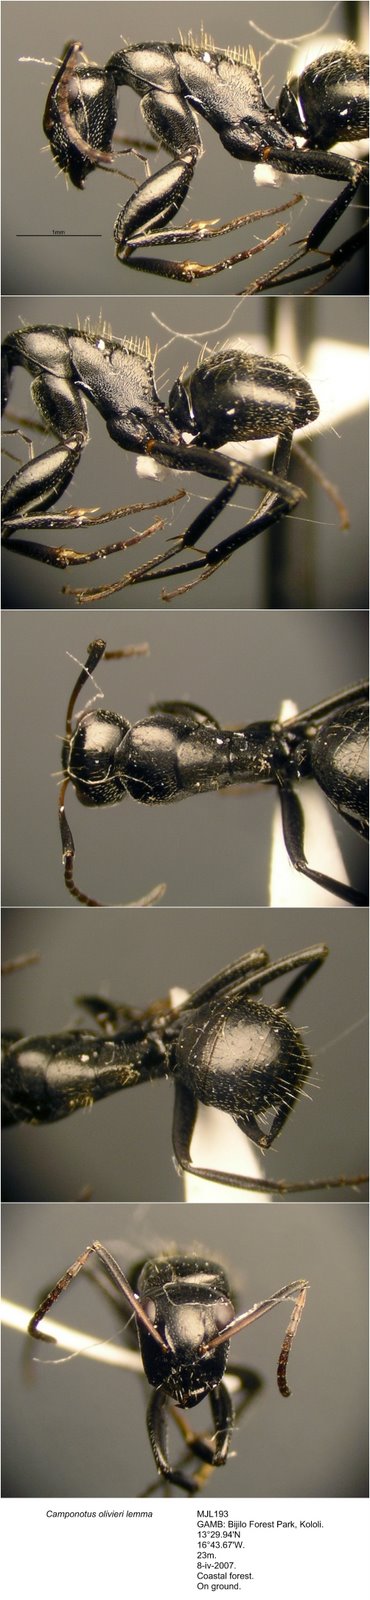 [Camponotus+olivieri+lemma+MJL193+photomontage+linear.jpg]